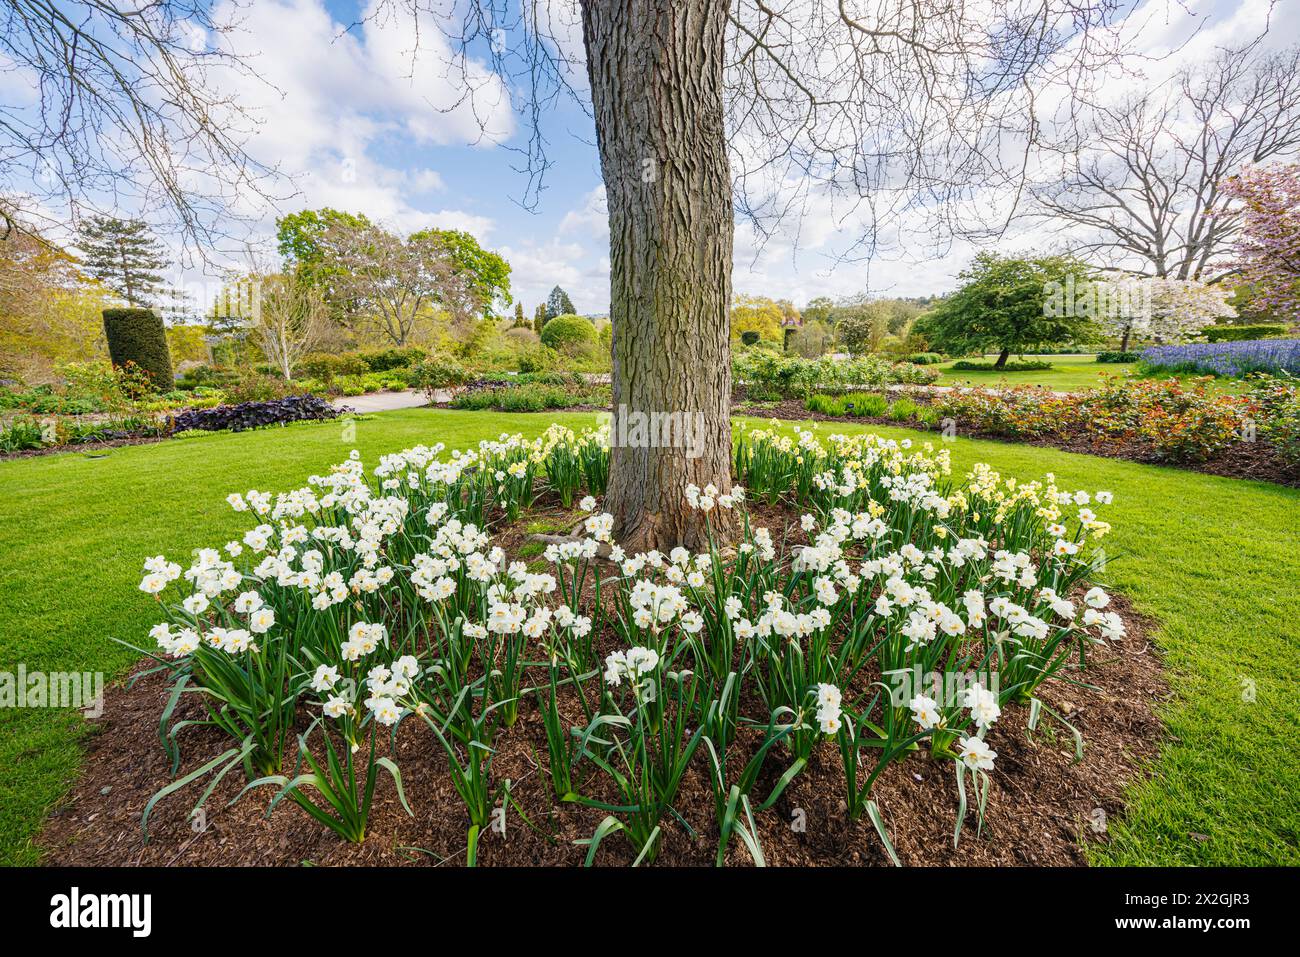 Narcissus 'Yellow Joyfulness' et blanc 'Joyfulness' floraison autour de la base d'un arbre, RHS Garden, Wisley, Surrey, sud-est de l'Angleterre au printemps Banque D'Images